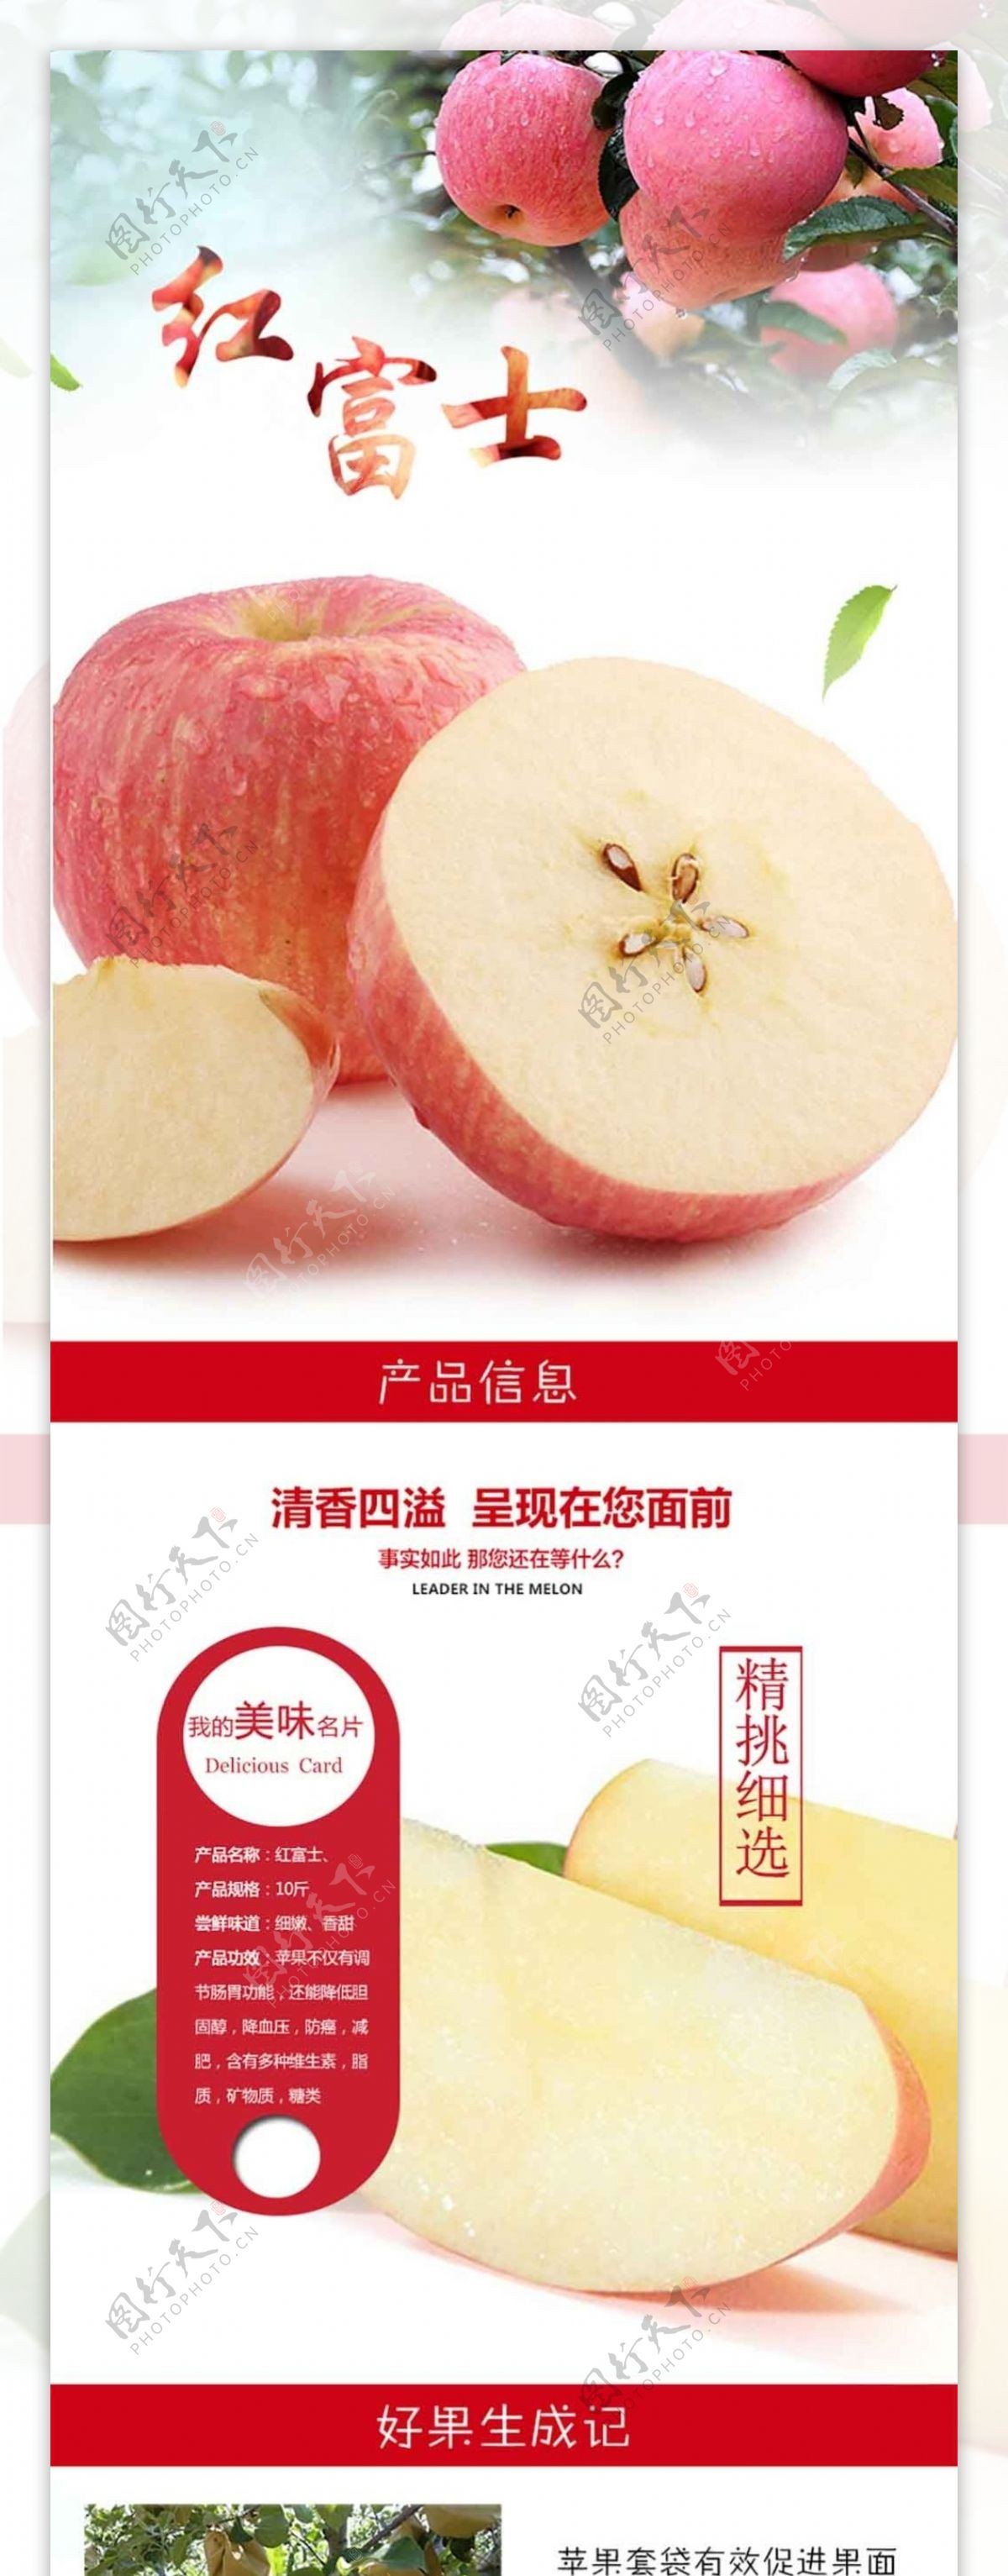 洛川苹果1详情页水果